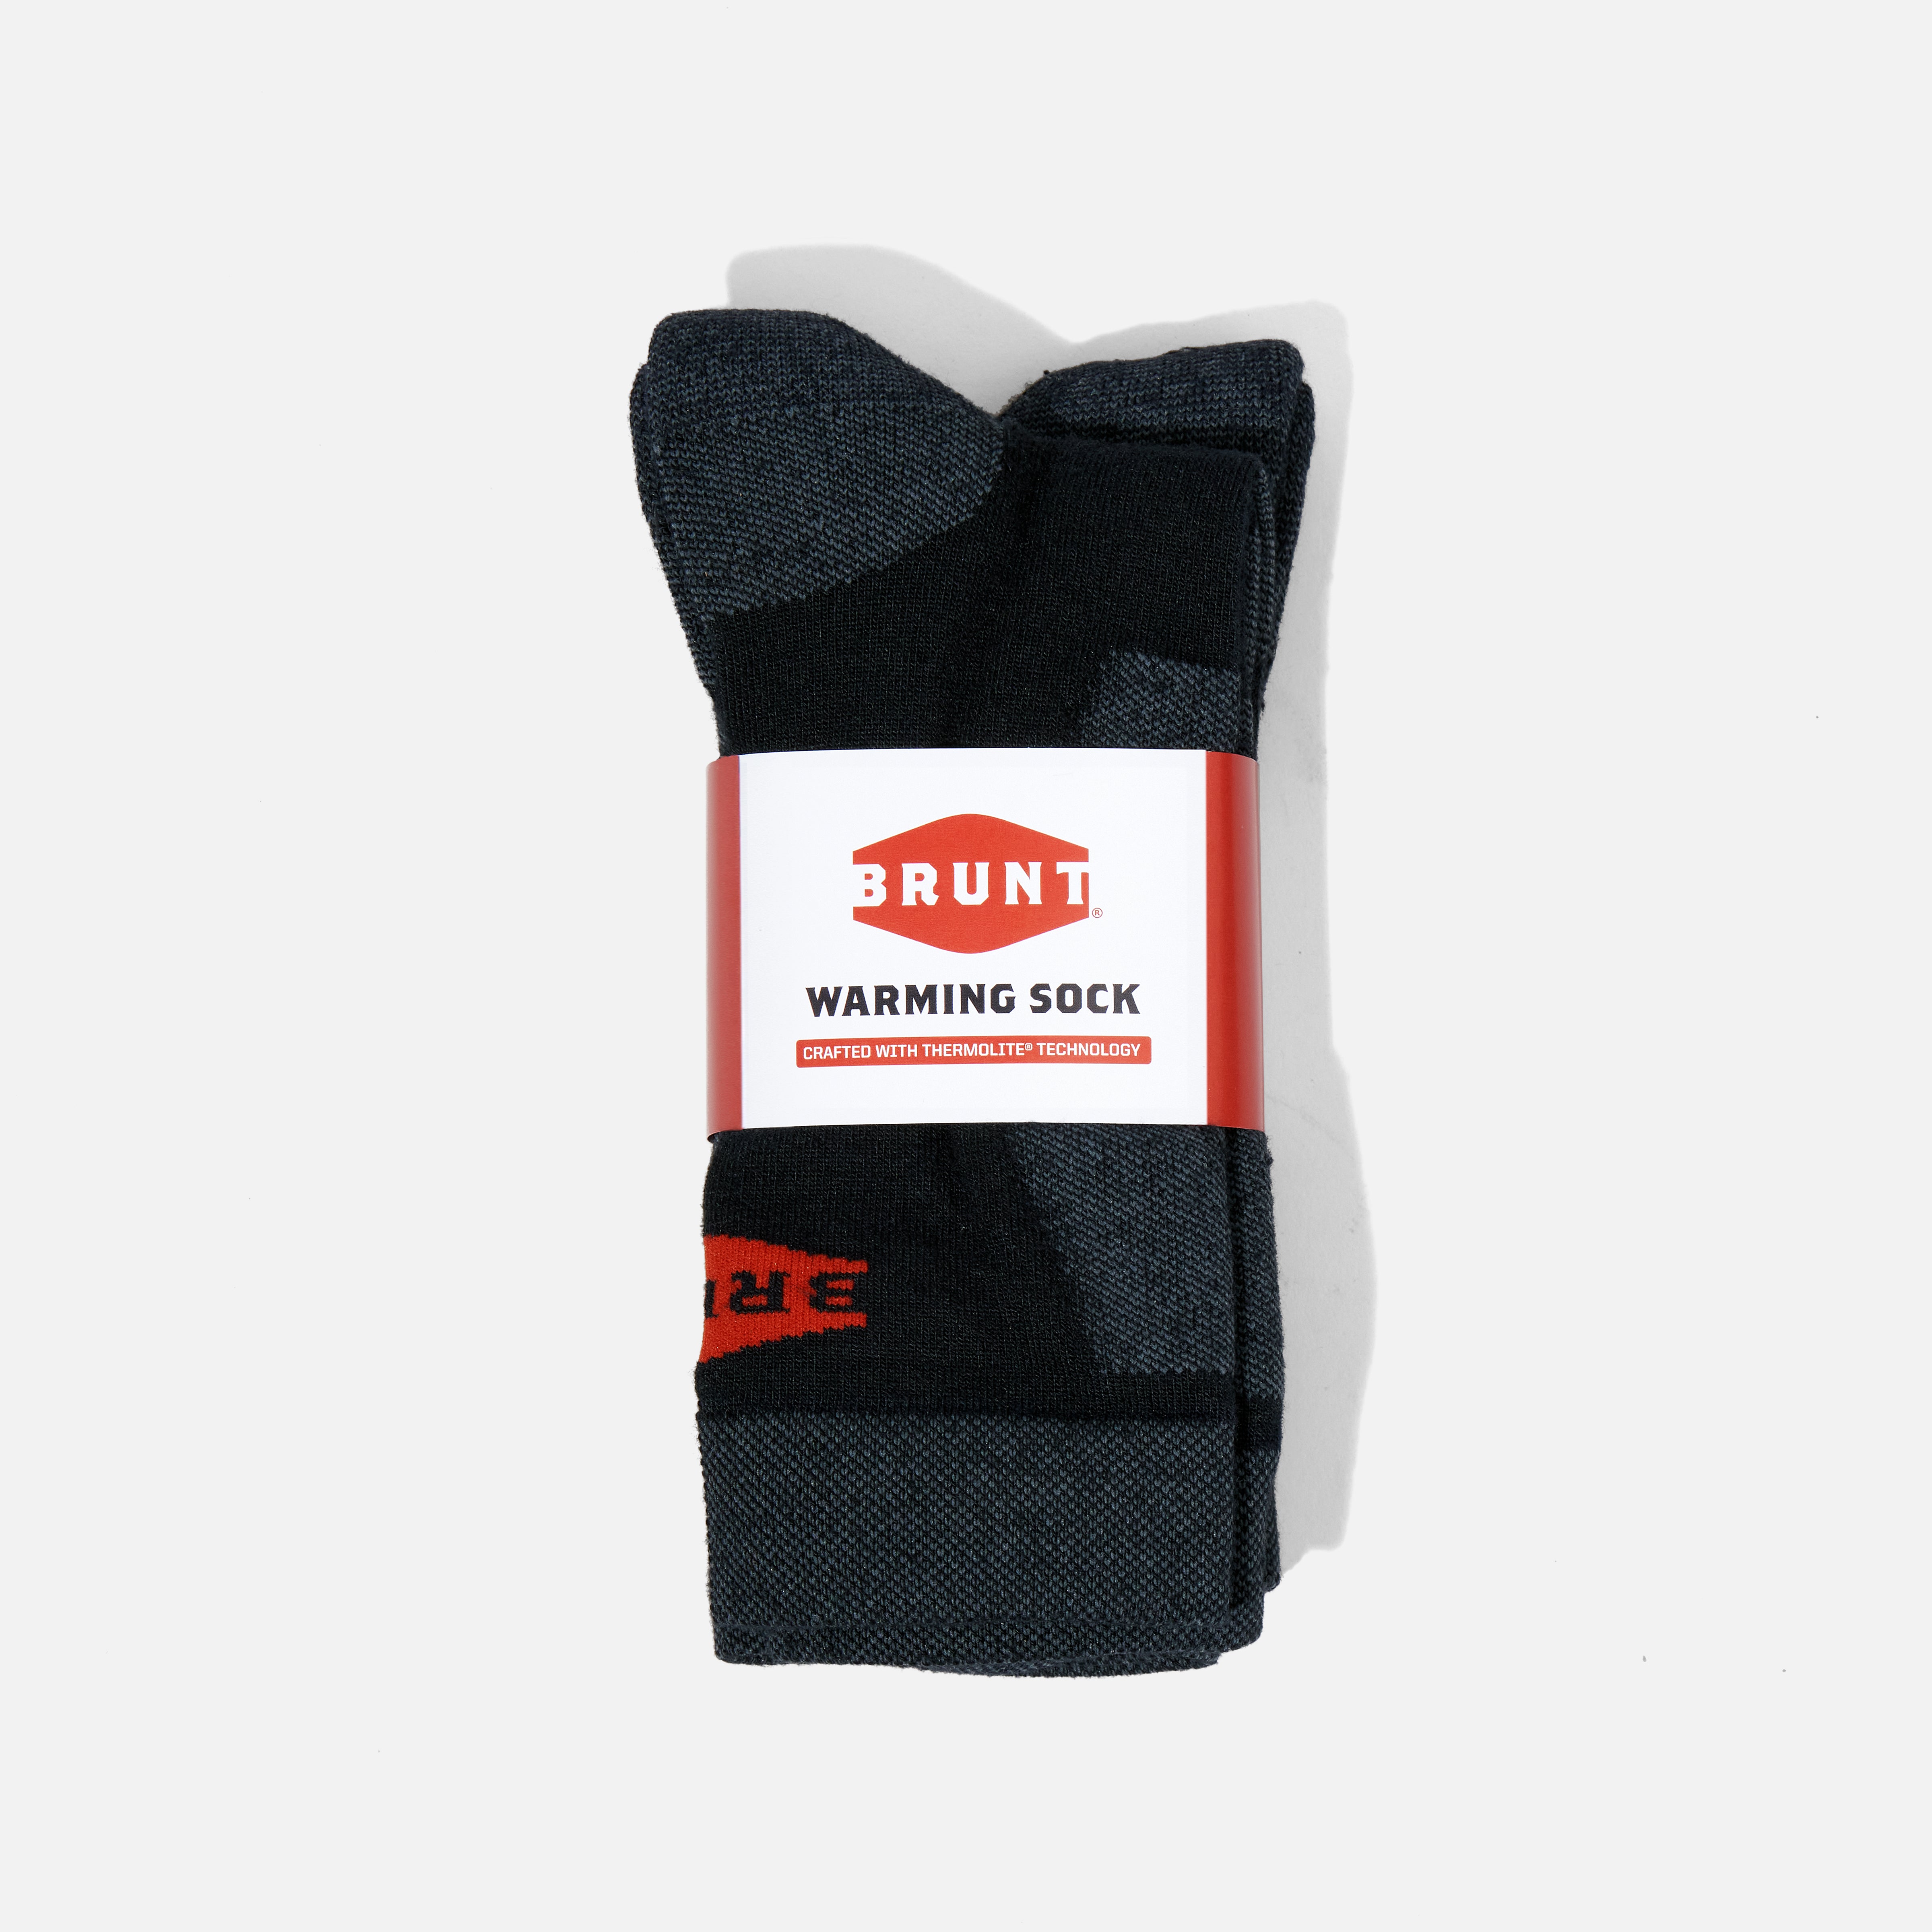 BRUNT Warming Sock (2 Pack)